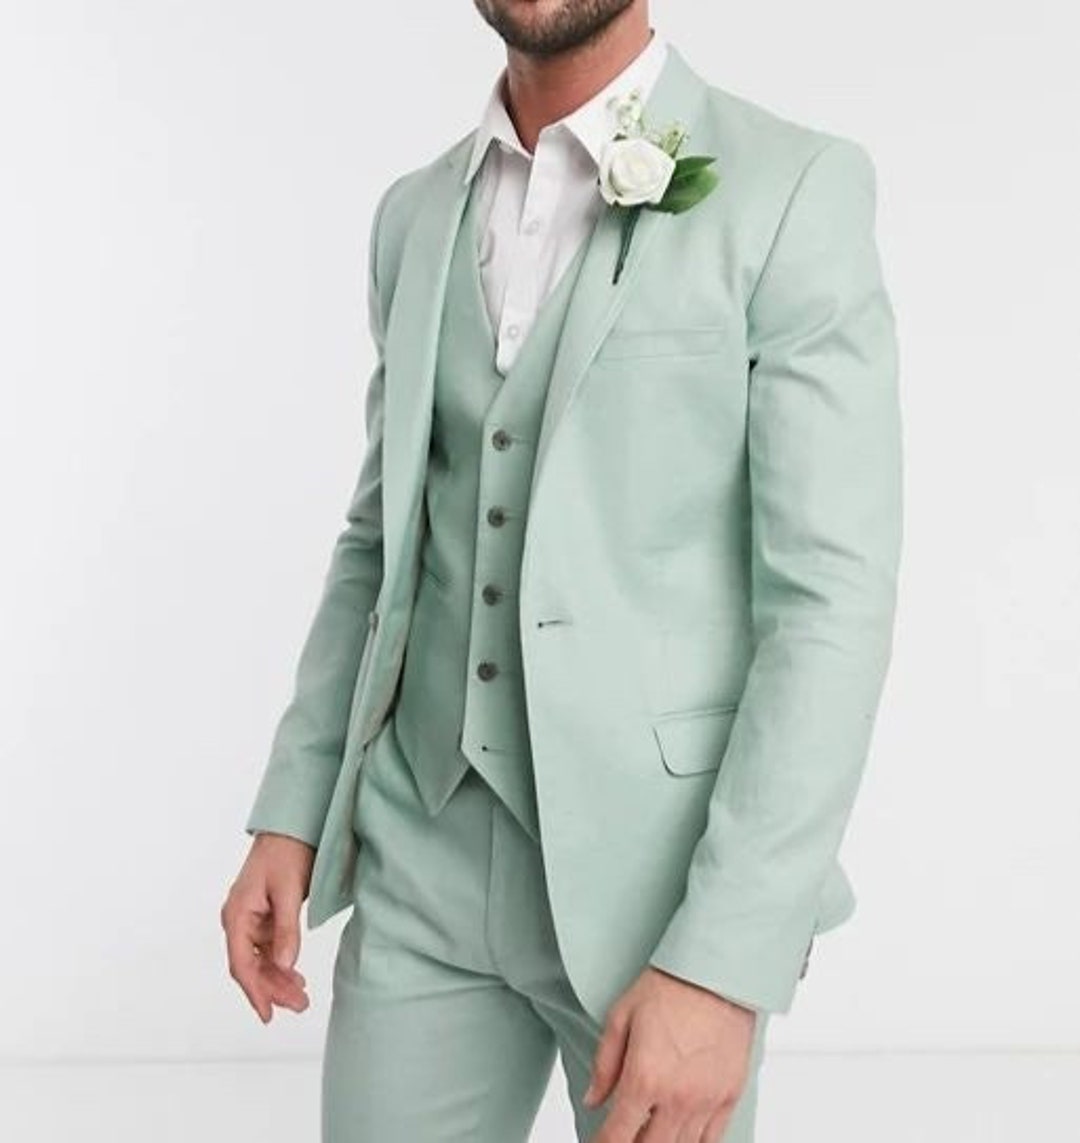 MEN SUIT Mint Green Suit Sage Green Suit Men Wedding Suit Men Prom Suit  Wedding Wear Suit Suit for Men Slim Fit 3 Piece Suit 